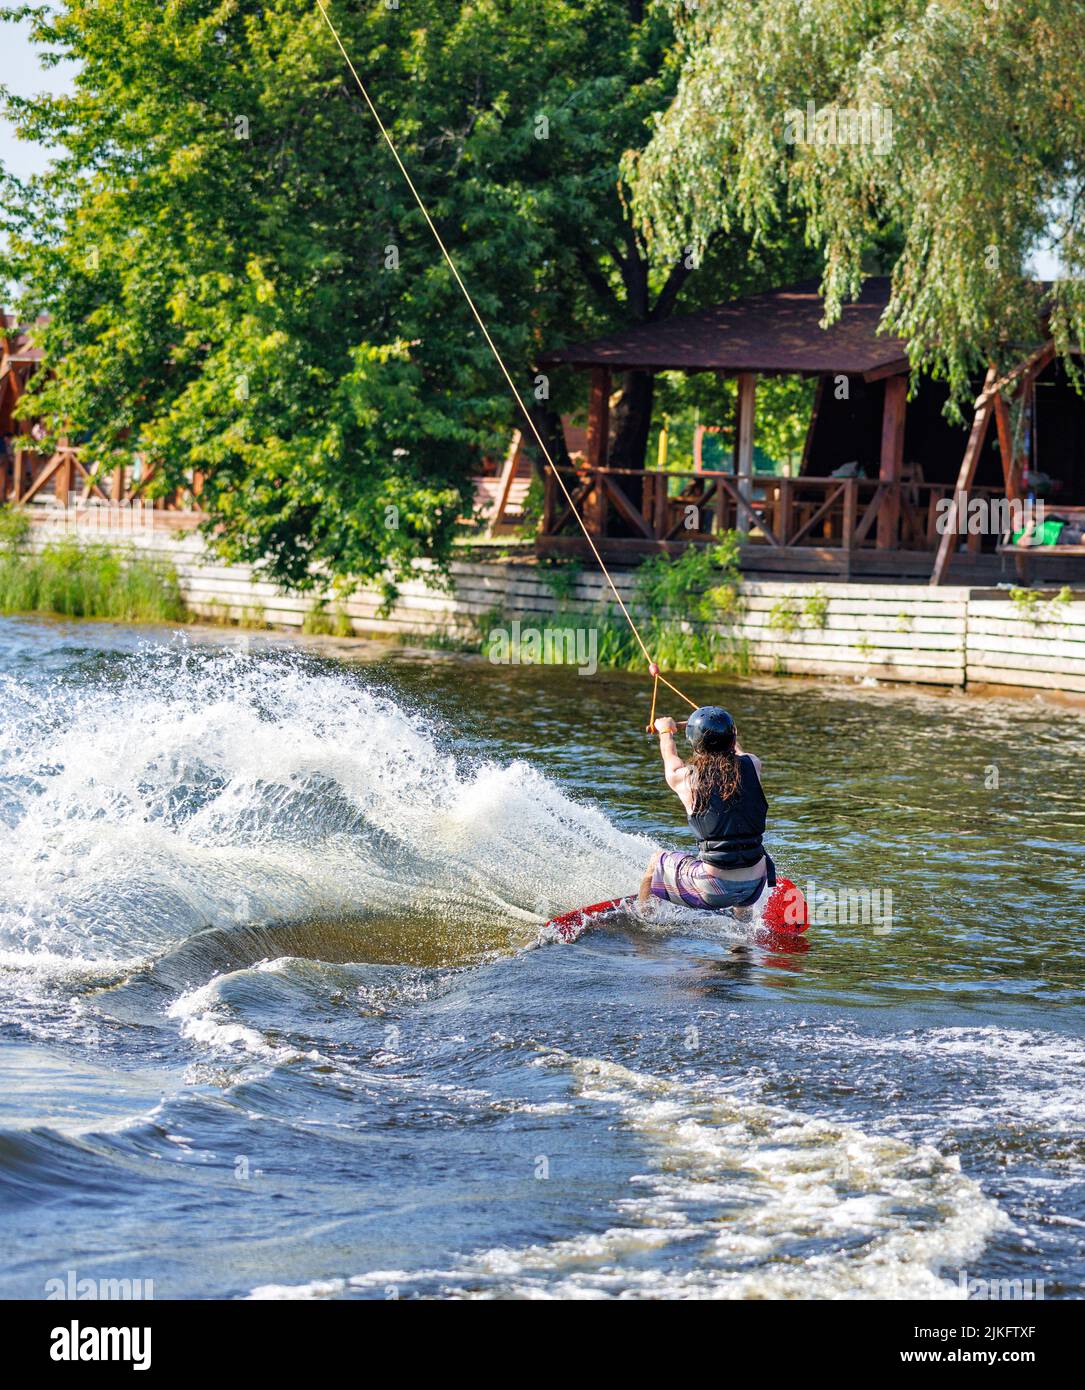 Wassersport, macht der Wakeboarder eine scharfe Wendung auf dem Wasser und wirft eine Welle und viel Spray. Stockfoto